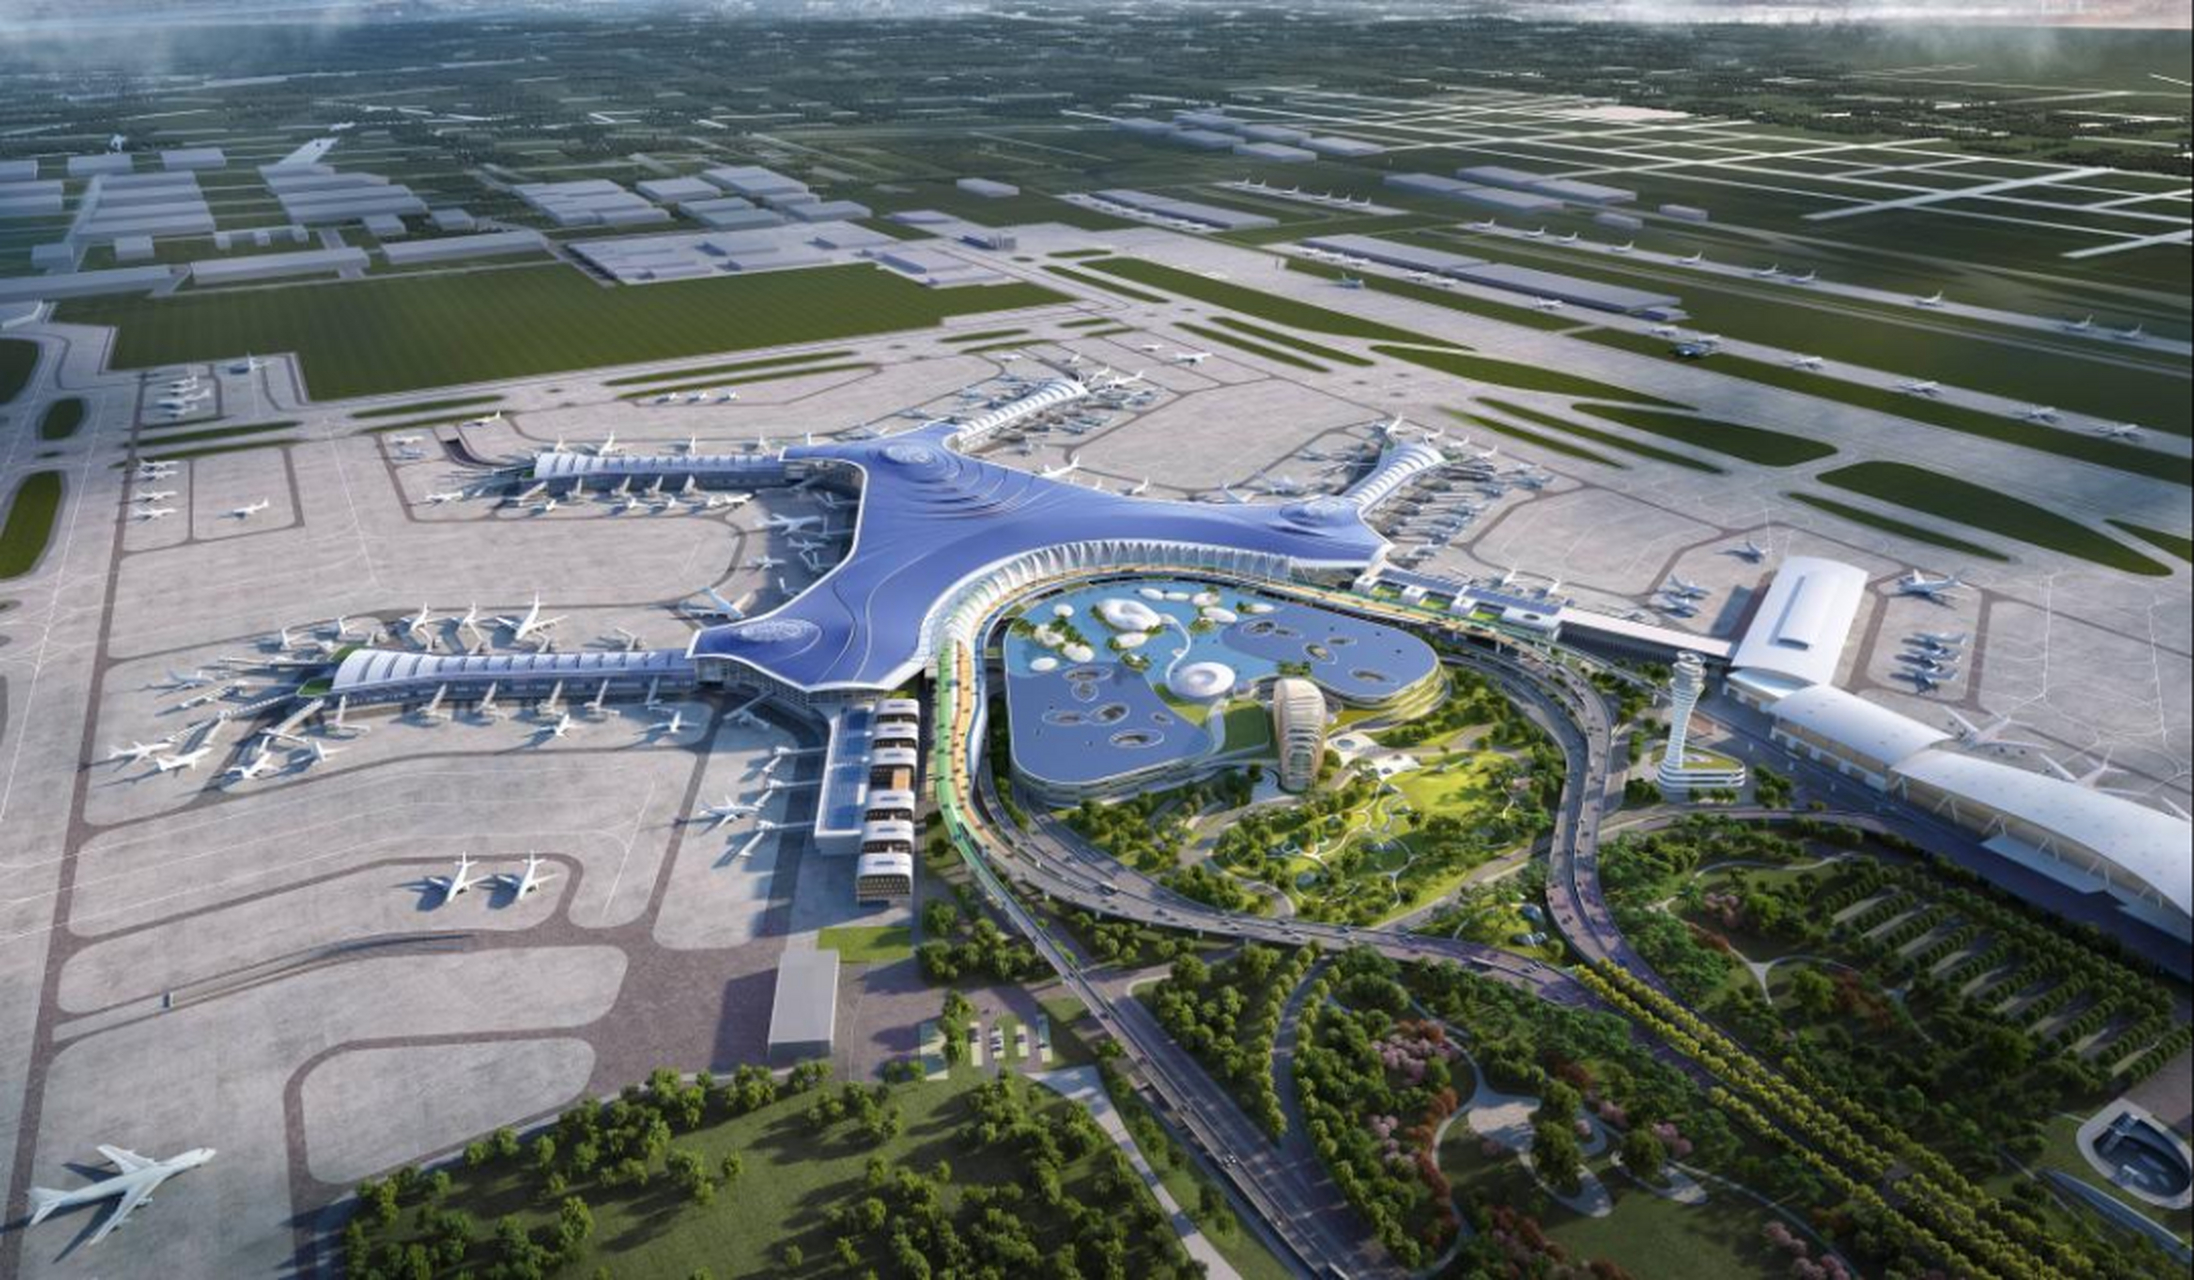 济南遥墙国际机场二期改扩建工程最新效果图曝光!